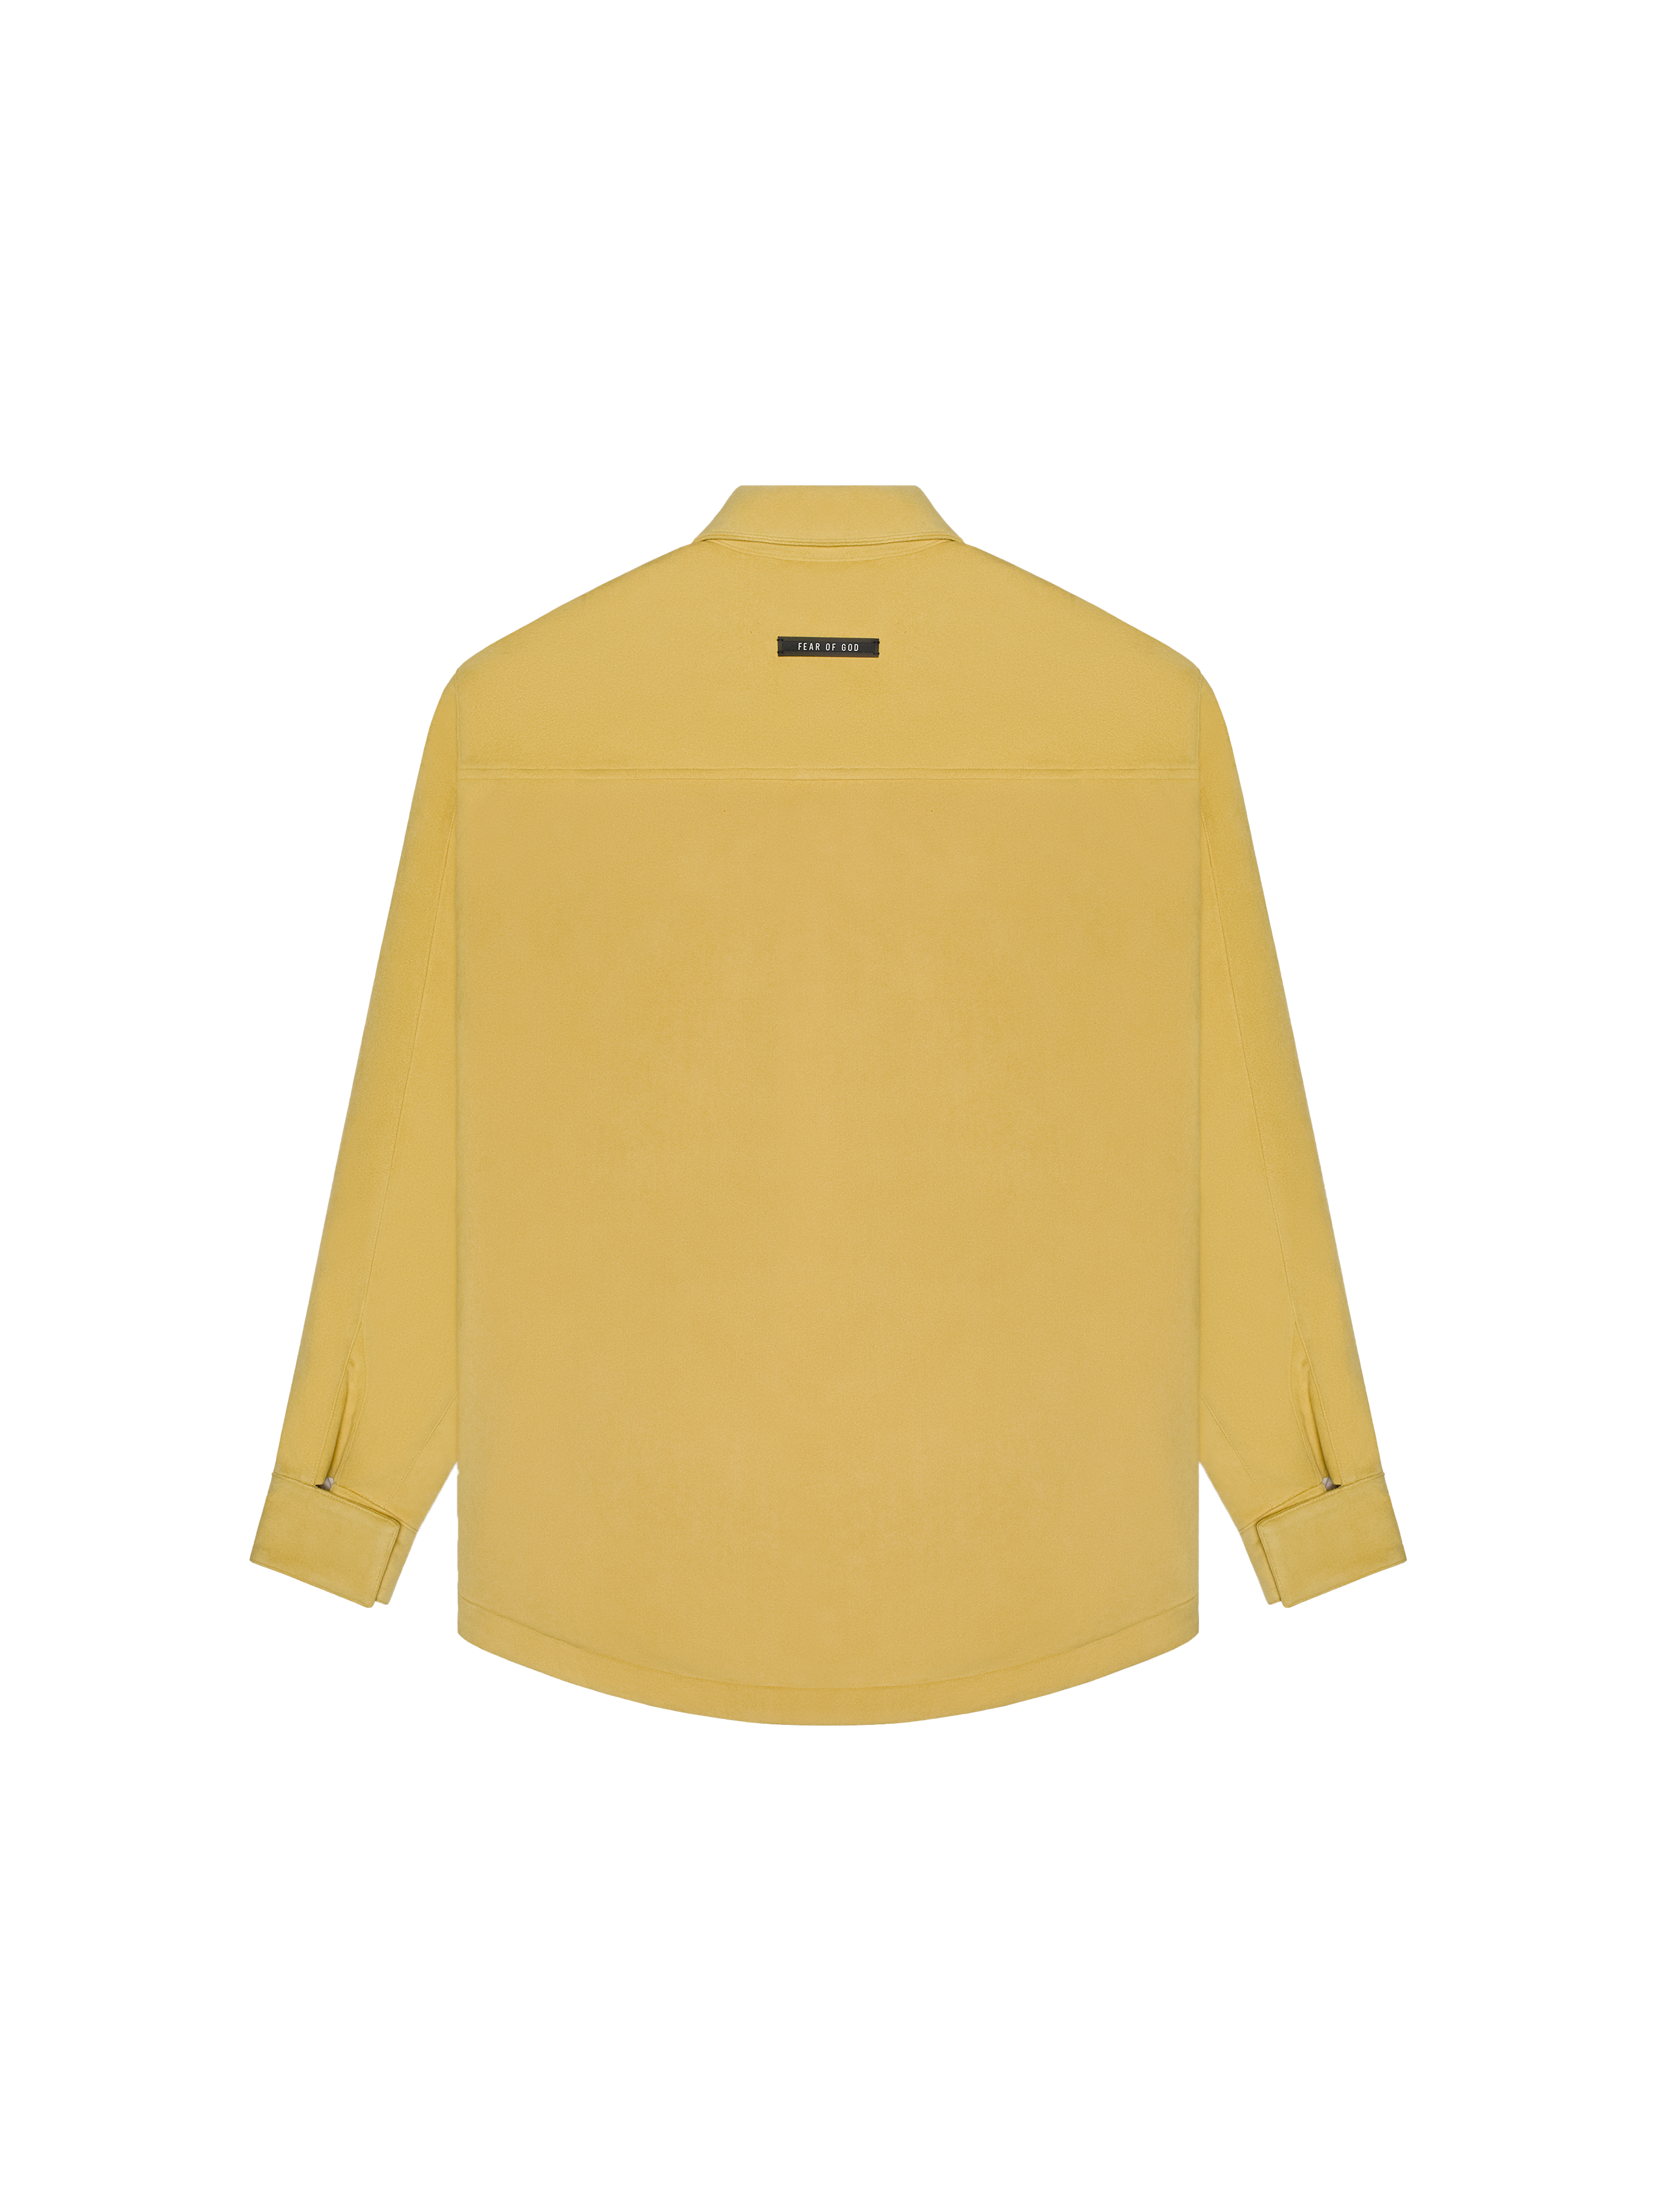 FEAR OF GOD Ultrasuede Shirt Jacket Garden Glove Yellow